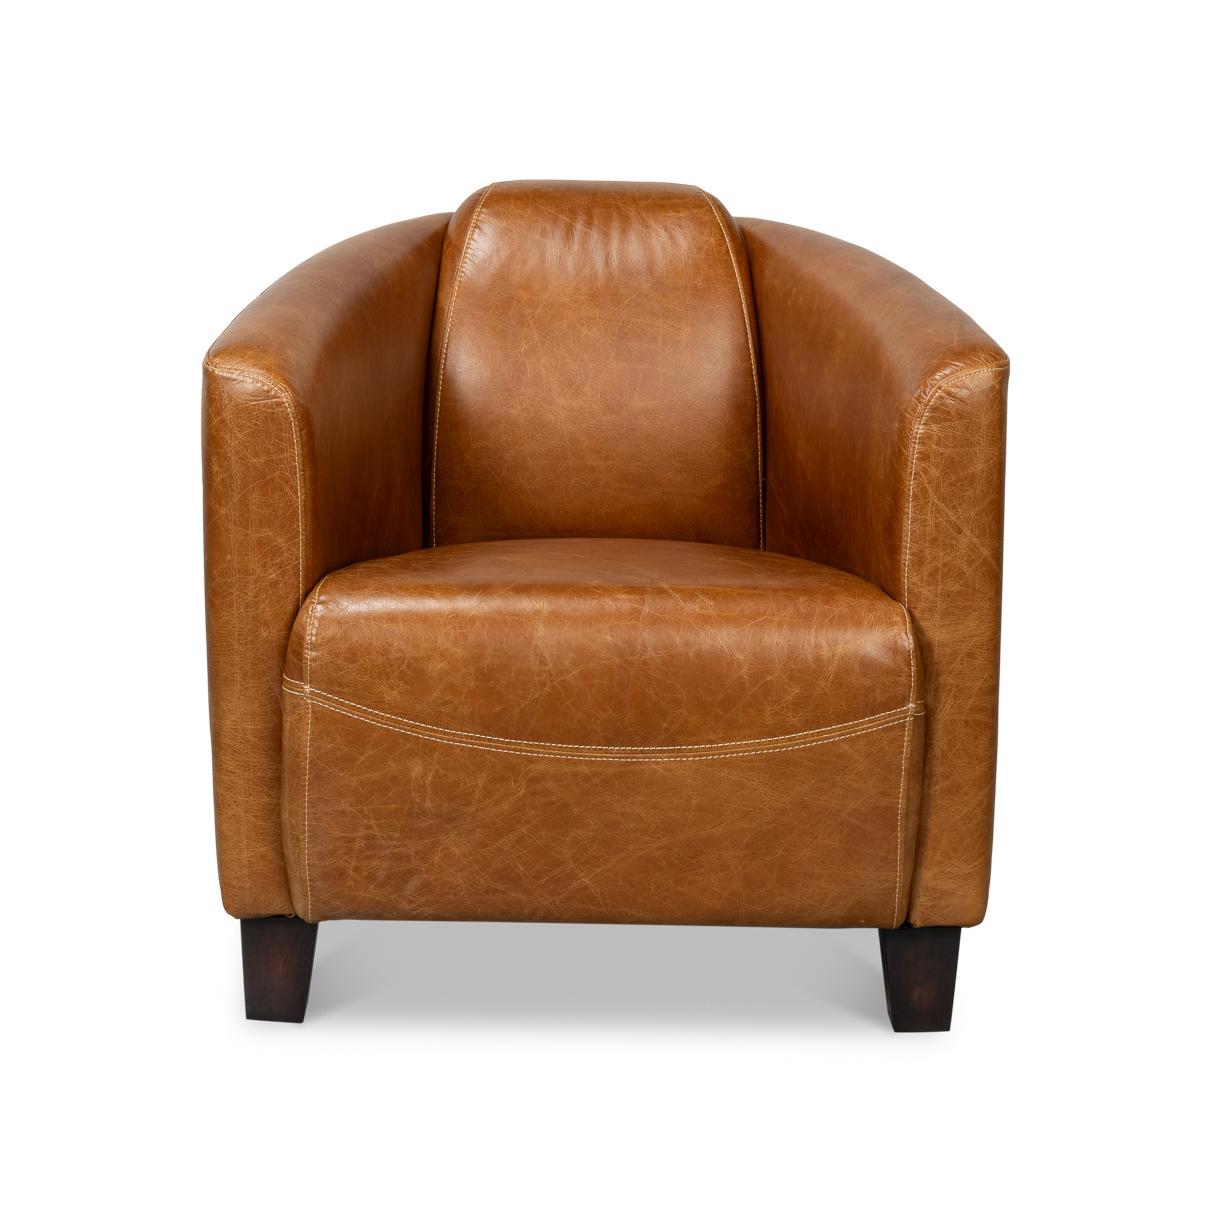 Fabriqué en cuir luxueux de première qualité de couleur marron chaud, ce fauteuil élégant et confortable est parfait pour votre salon, votre bibliothèque ou votre salle de séjour.

Les variations de couleur sont courantes et acceptables sur les